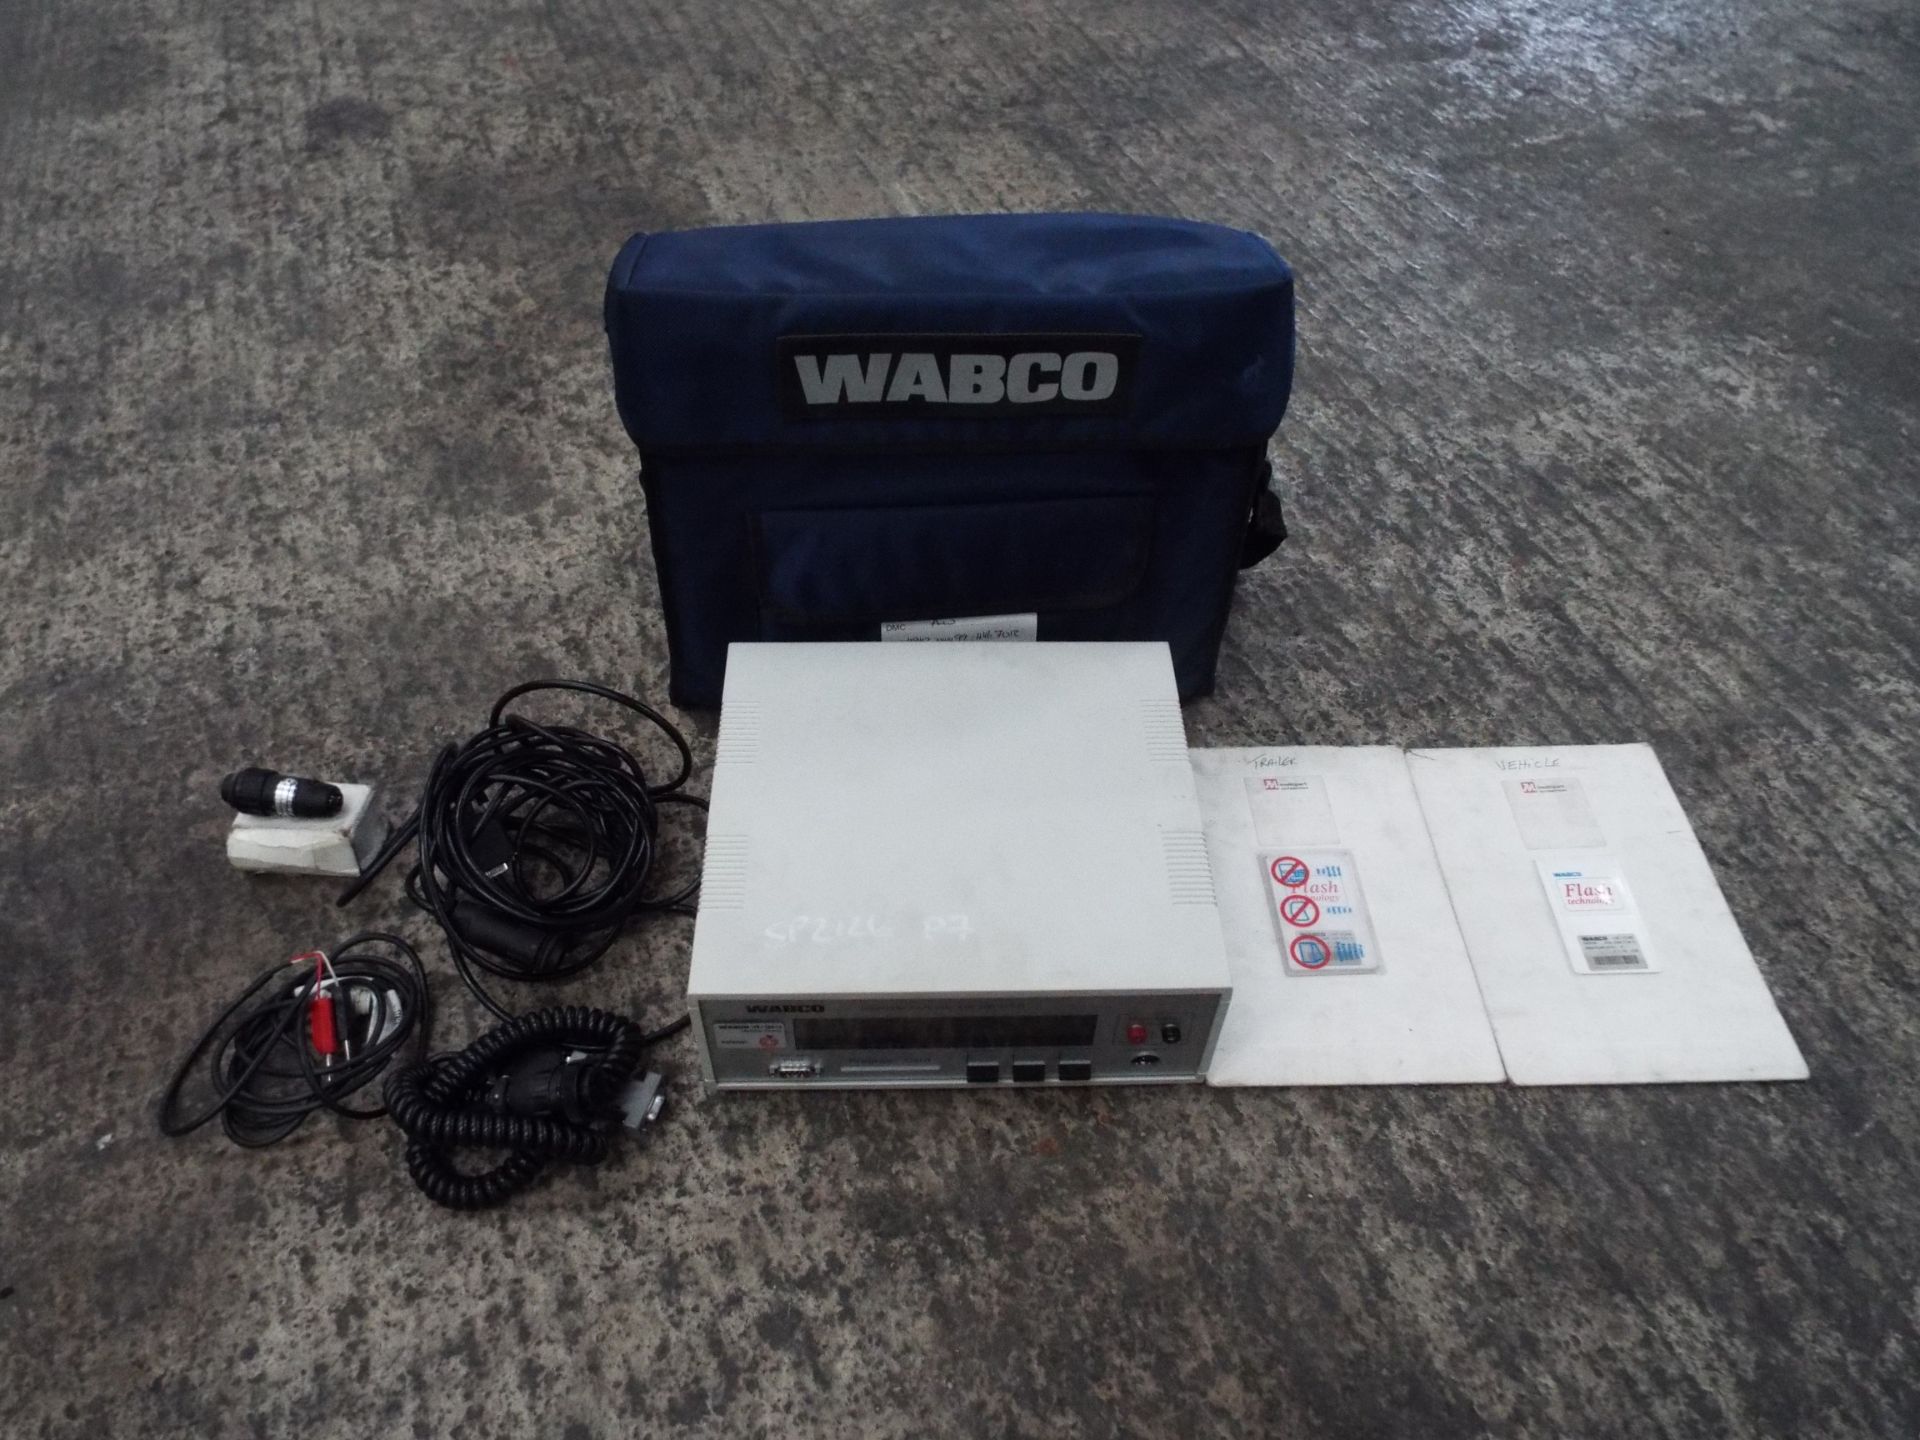 Wabco ABS Diagnostic Kit